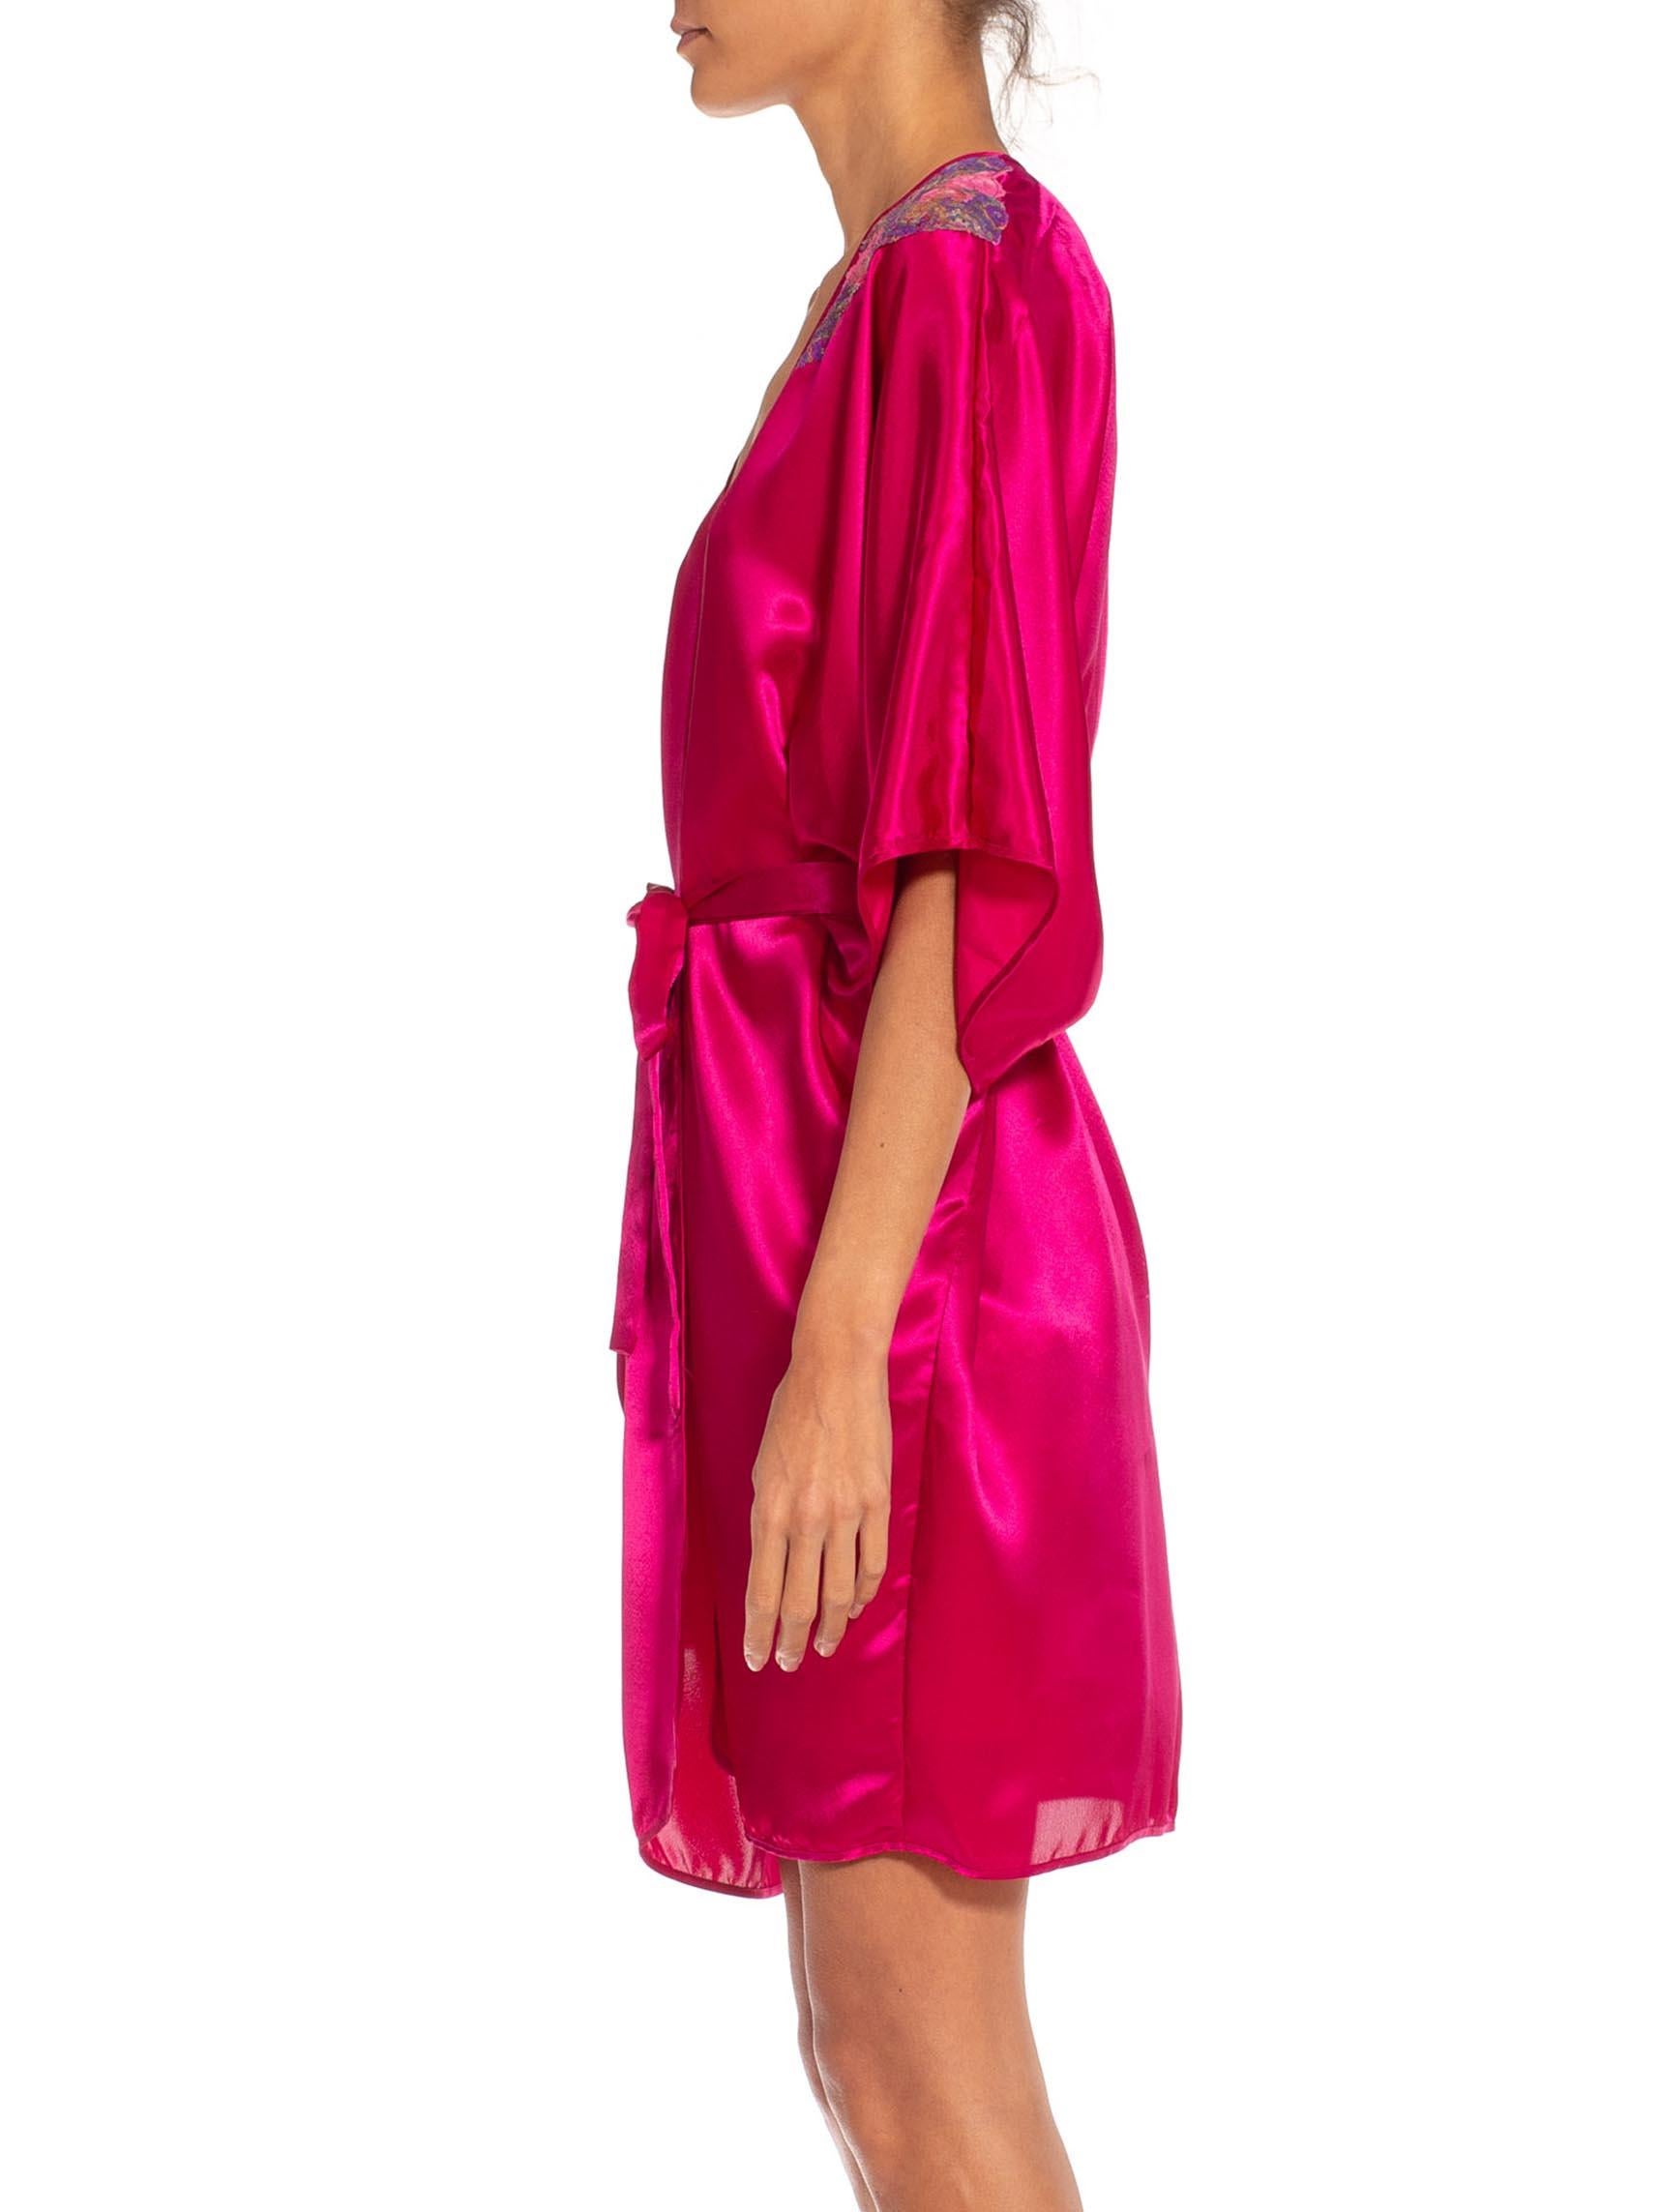 victoria secret dressing gown sale